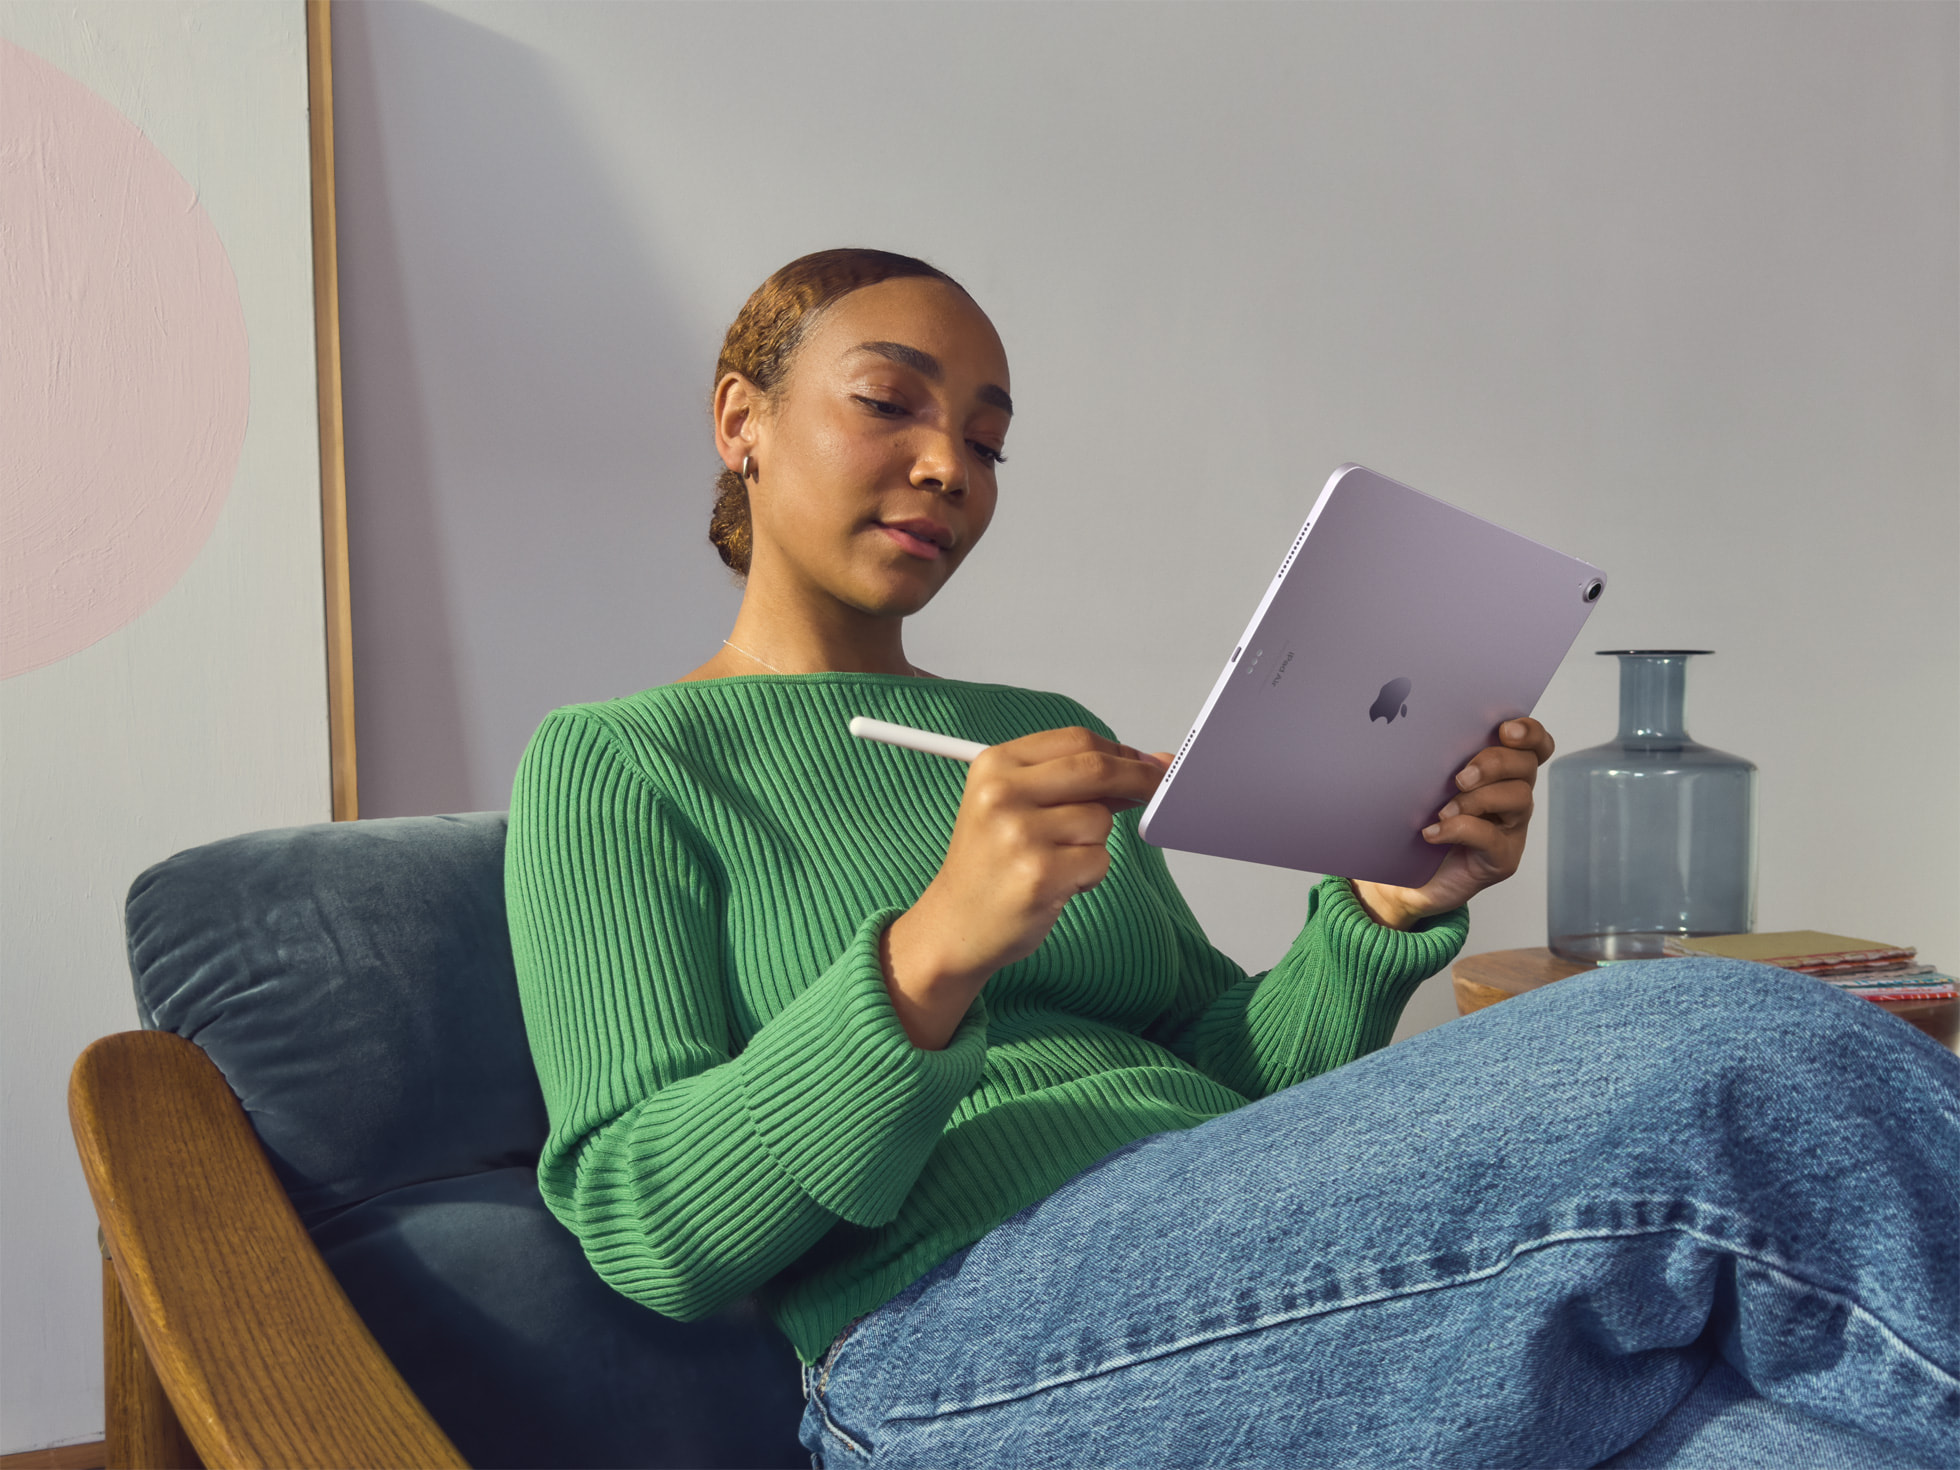 Apple presenta el iPad Air 6: tamaño similar al iPad Pro, nueva disposición de la cámara, procesador M2 y precio desde 599 dólares